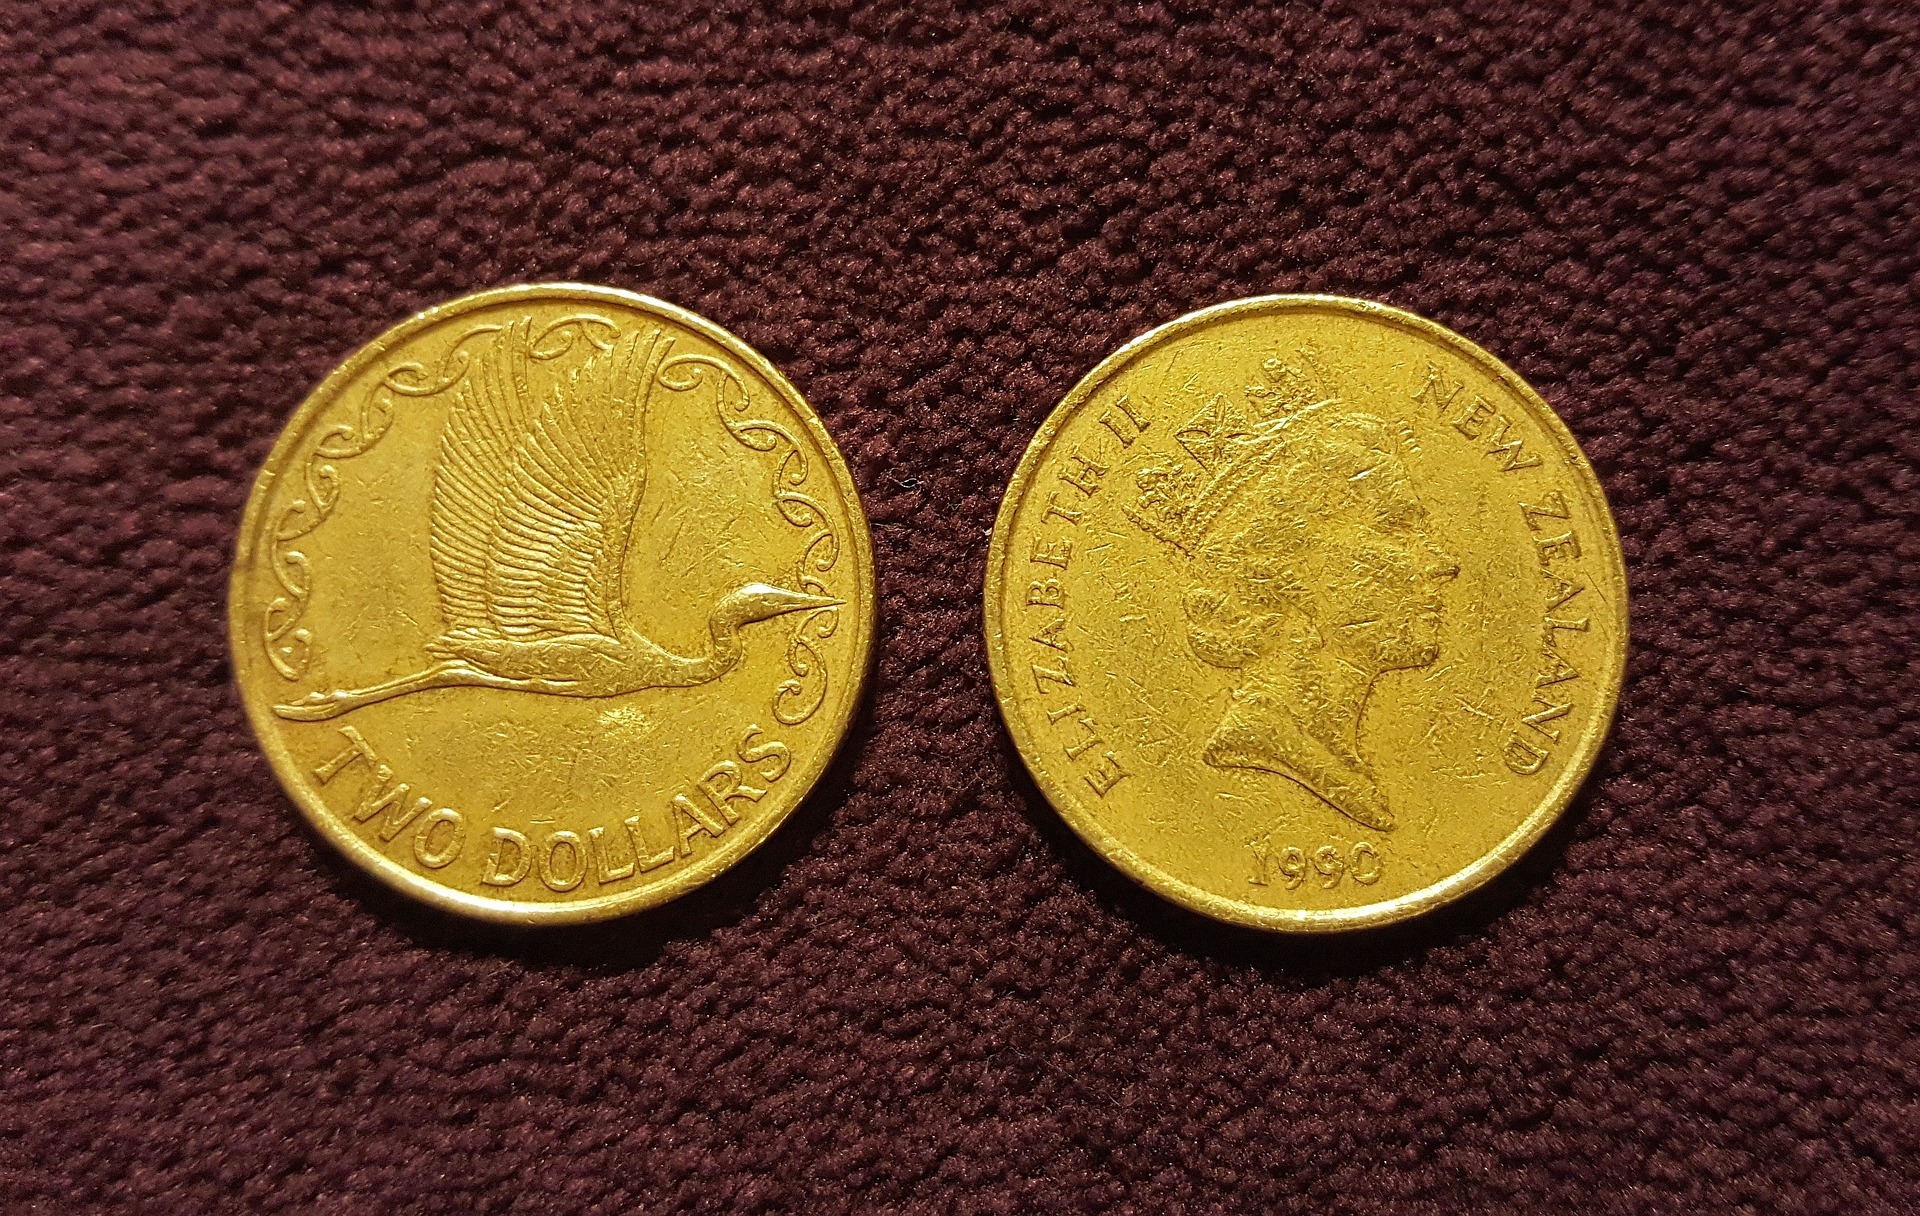 coins-gfbbcbab59_1920